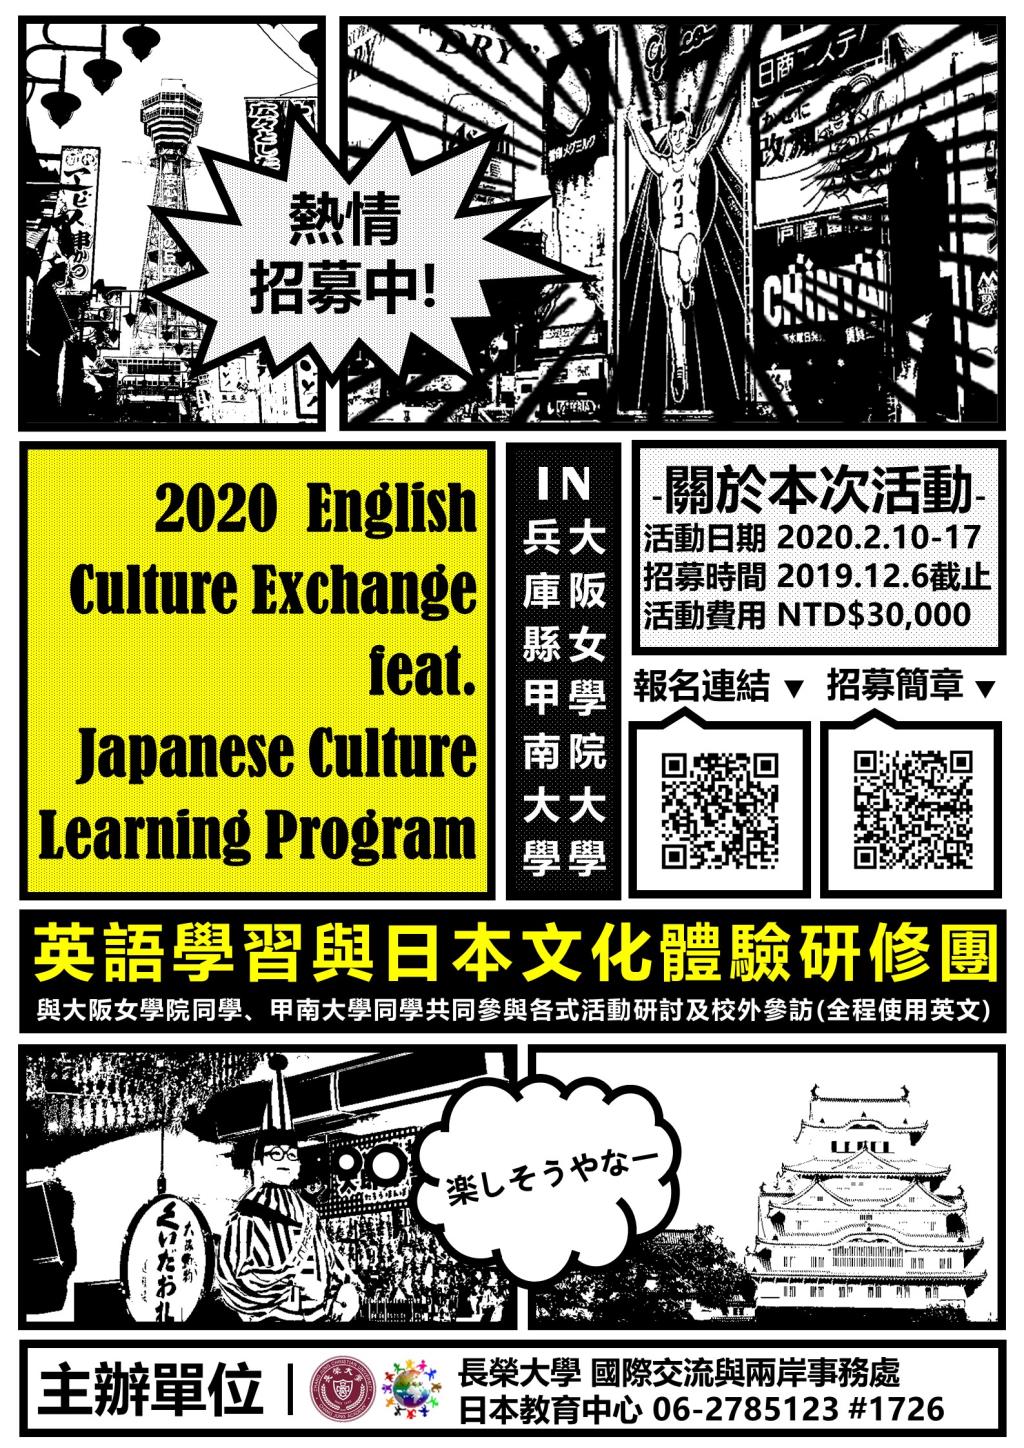 【寒假研修團】2020英語學習與日本文化體驗研修團 相關行程資訊大公開！